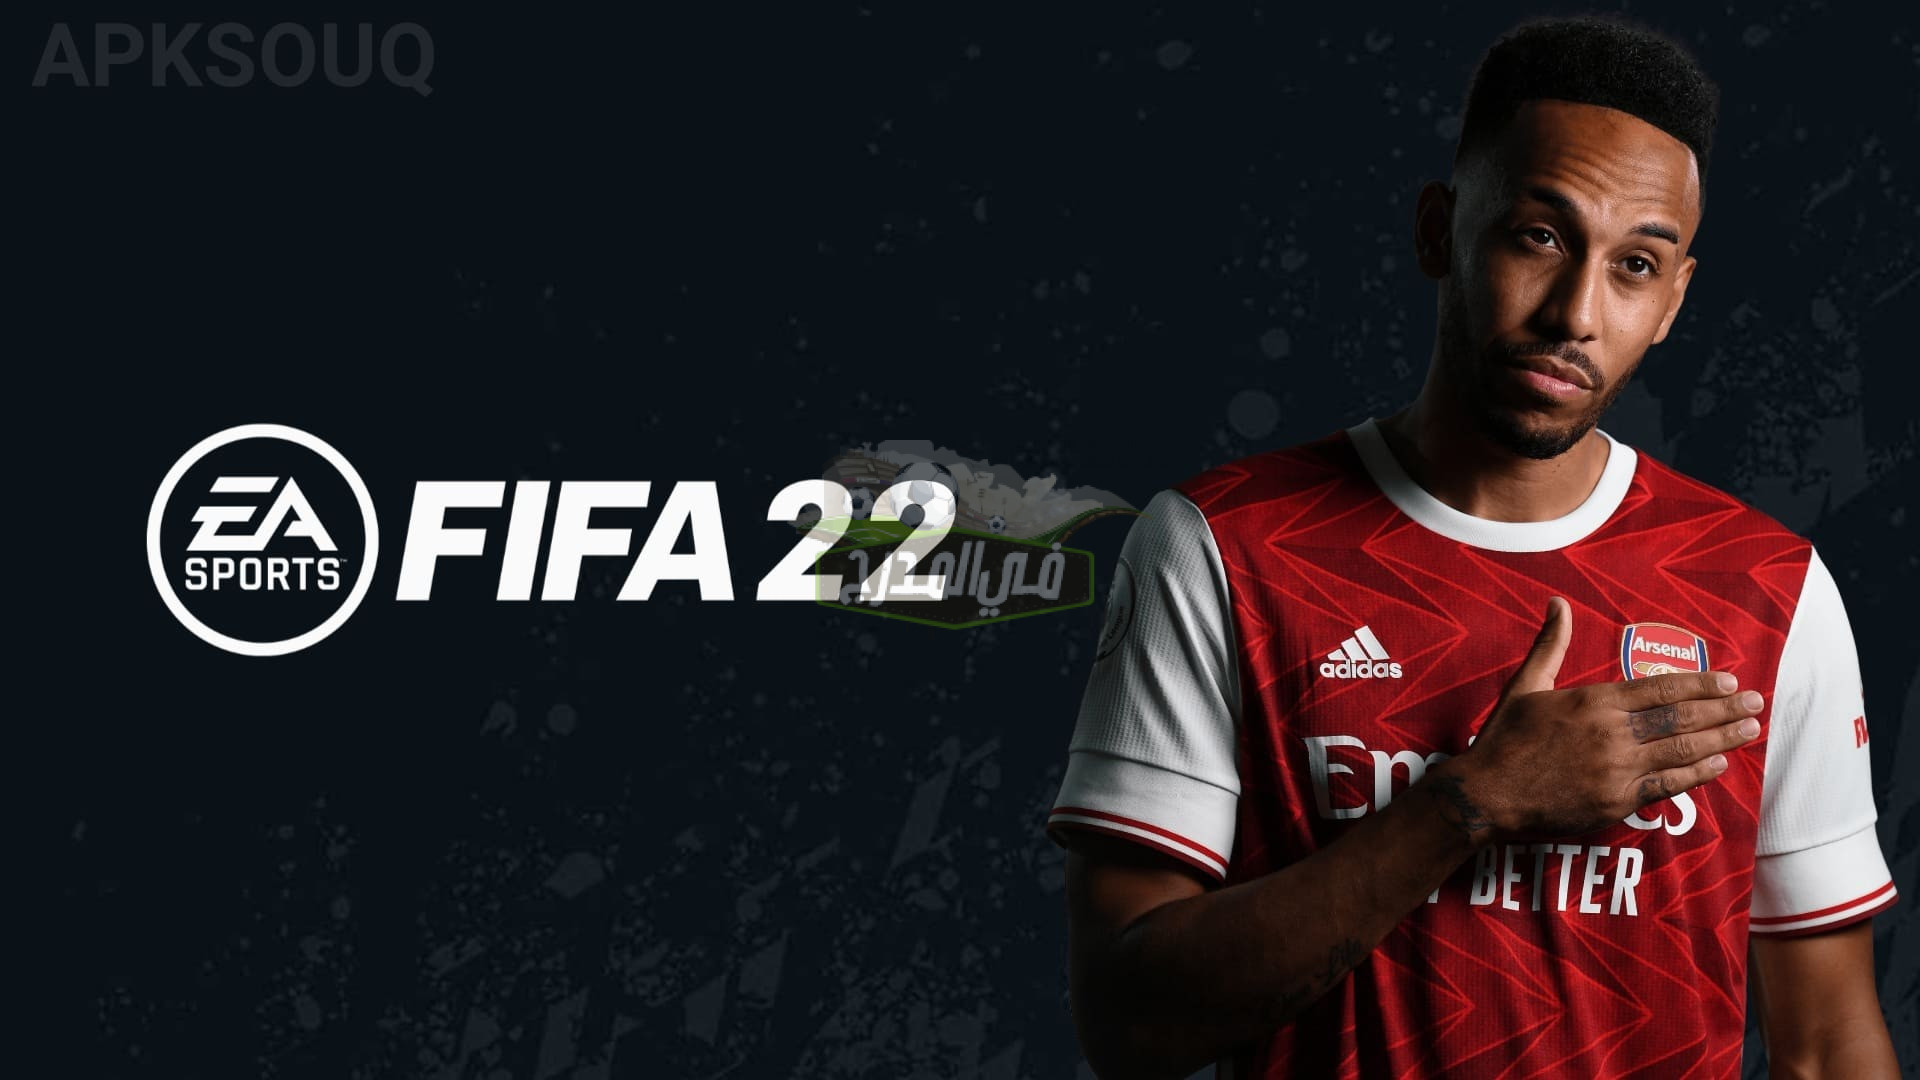 كل تفاصيل لعبة FIFA 22 وموعد طرحها ومميزاتها ومن هو نجم الغلاف